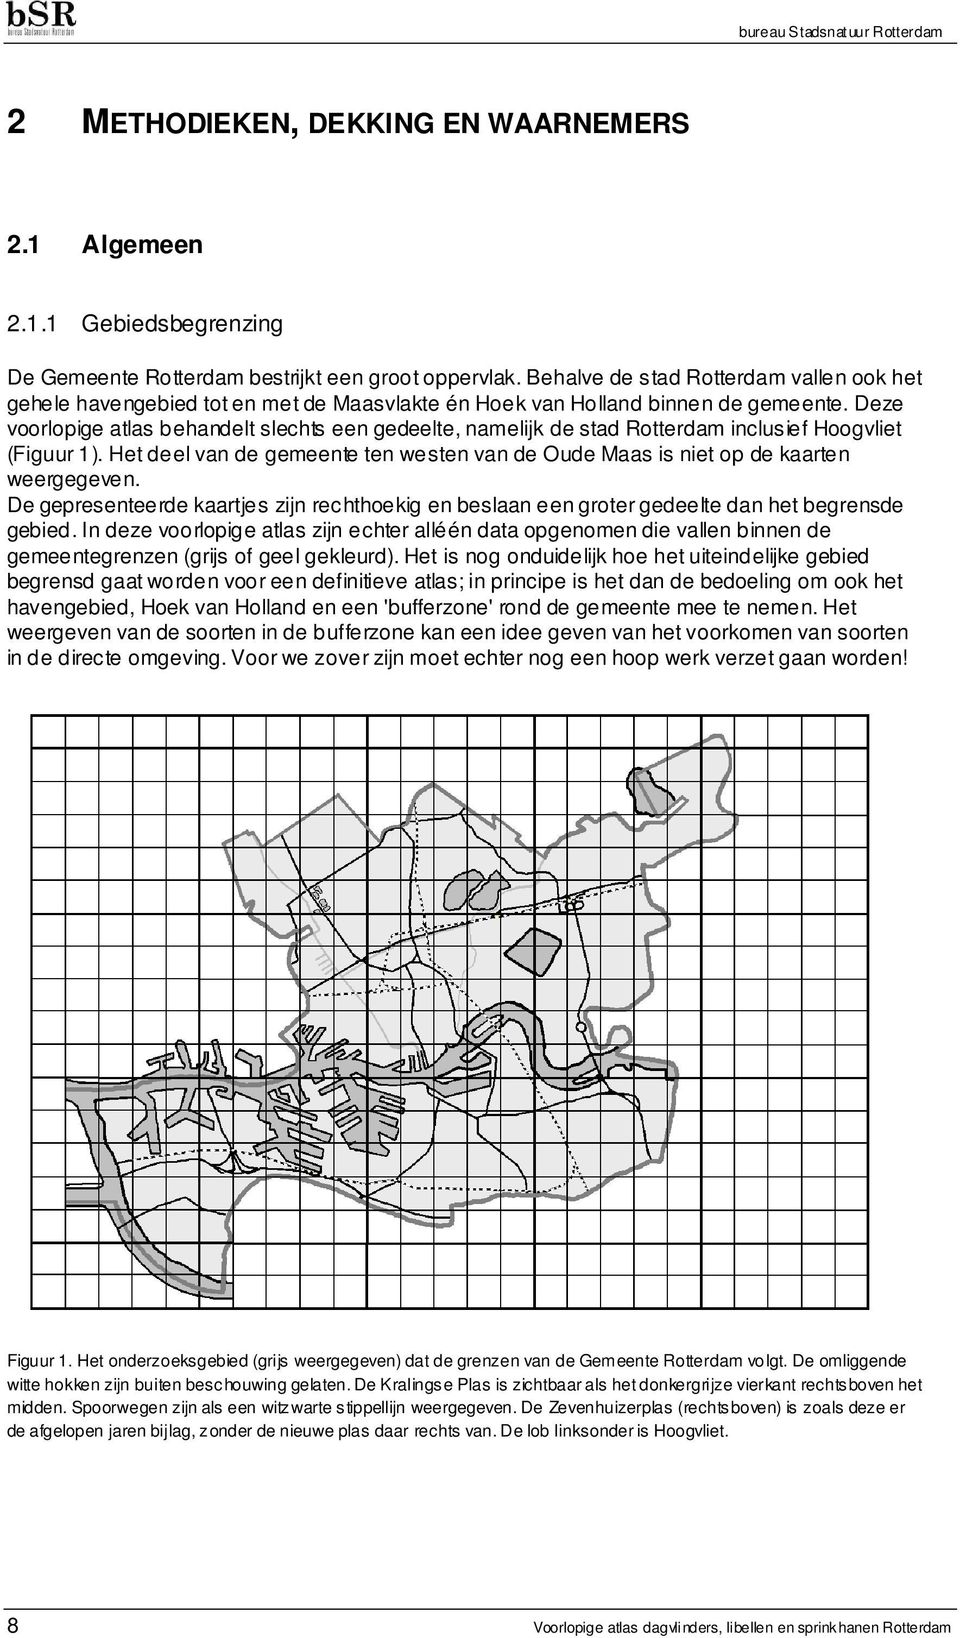 Deze voorlopige atlas behandelt slechts een gedeelte, namelijk de stad Rotterdam inclusief Hoogvliet (Figuur 1). Het deel van de gemeente ten westen van de Oude Maas is niet op de kaarten weergegeven.